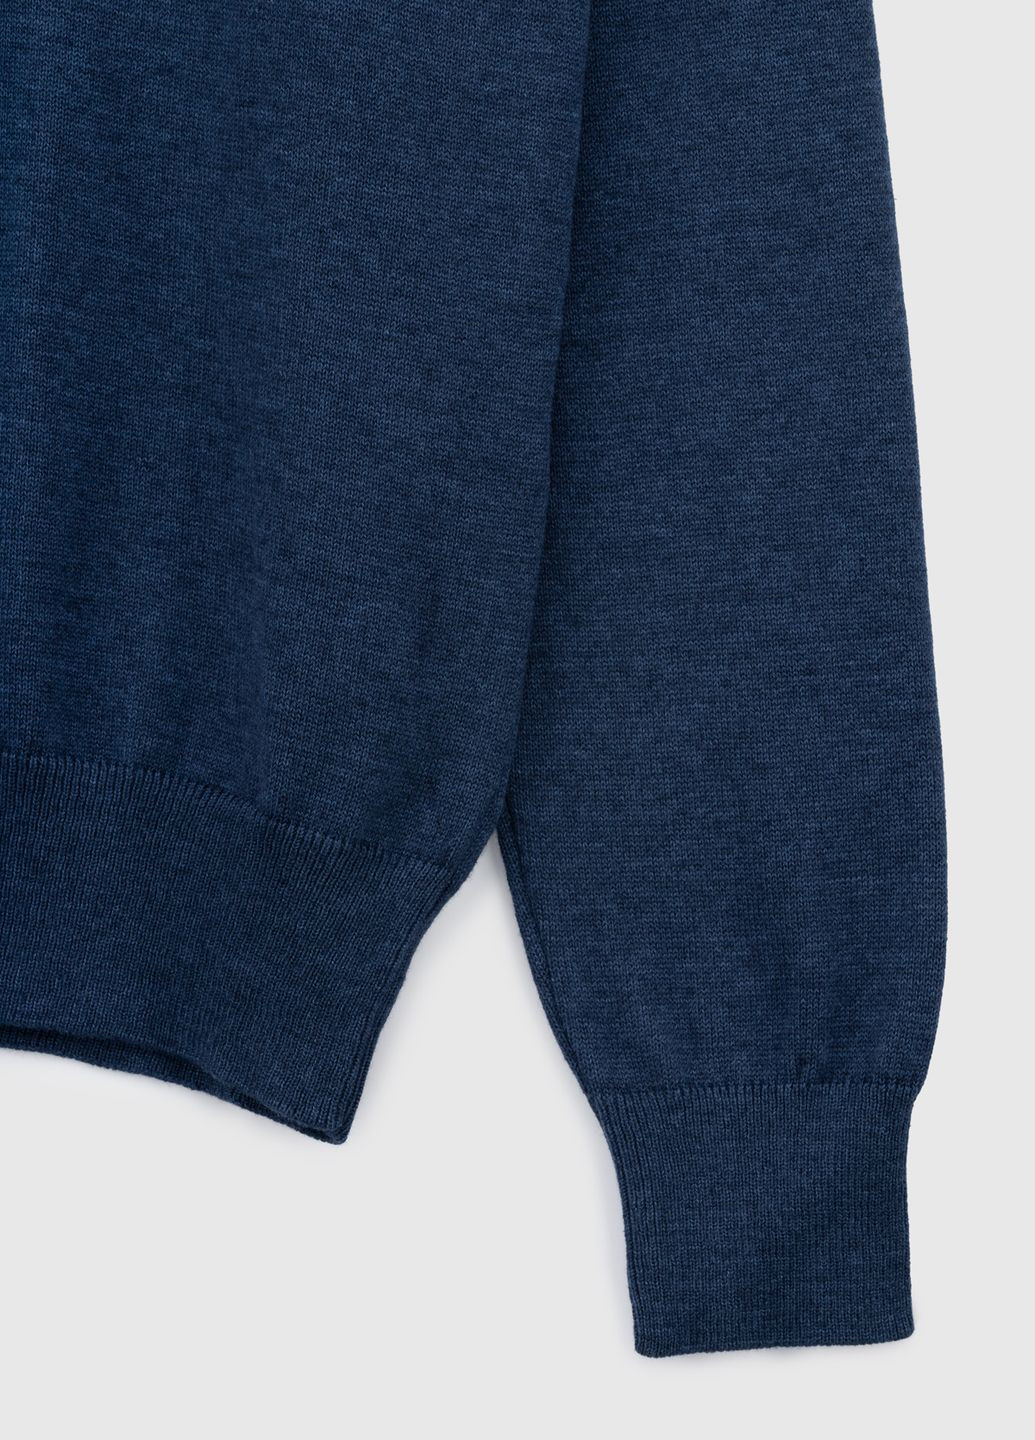 Синій демісезонний пуловер Figo